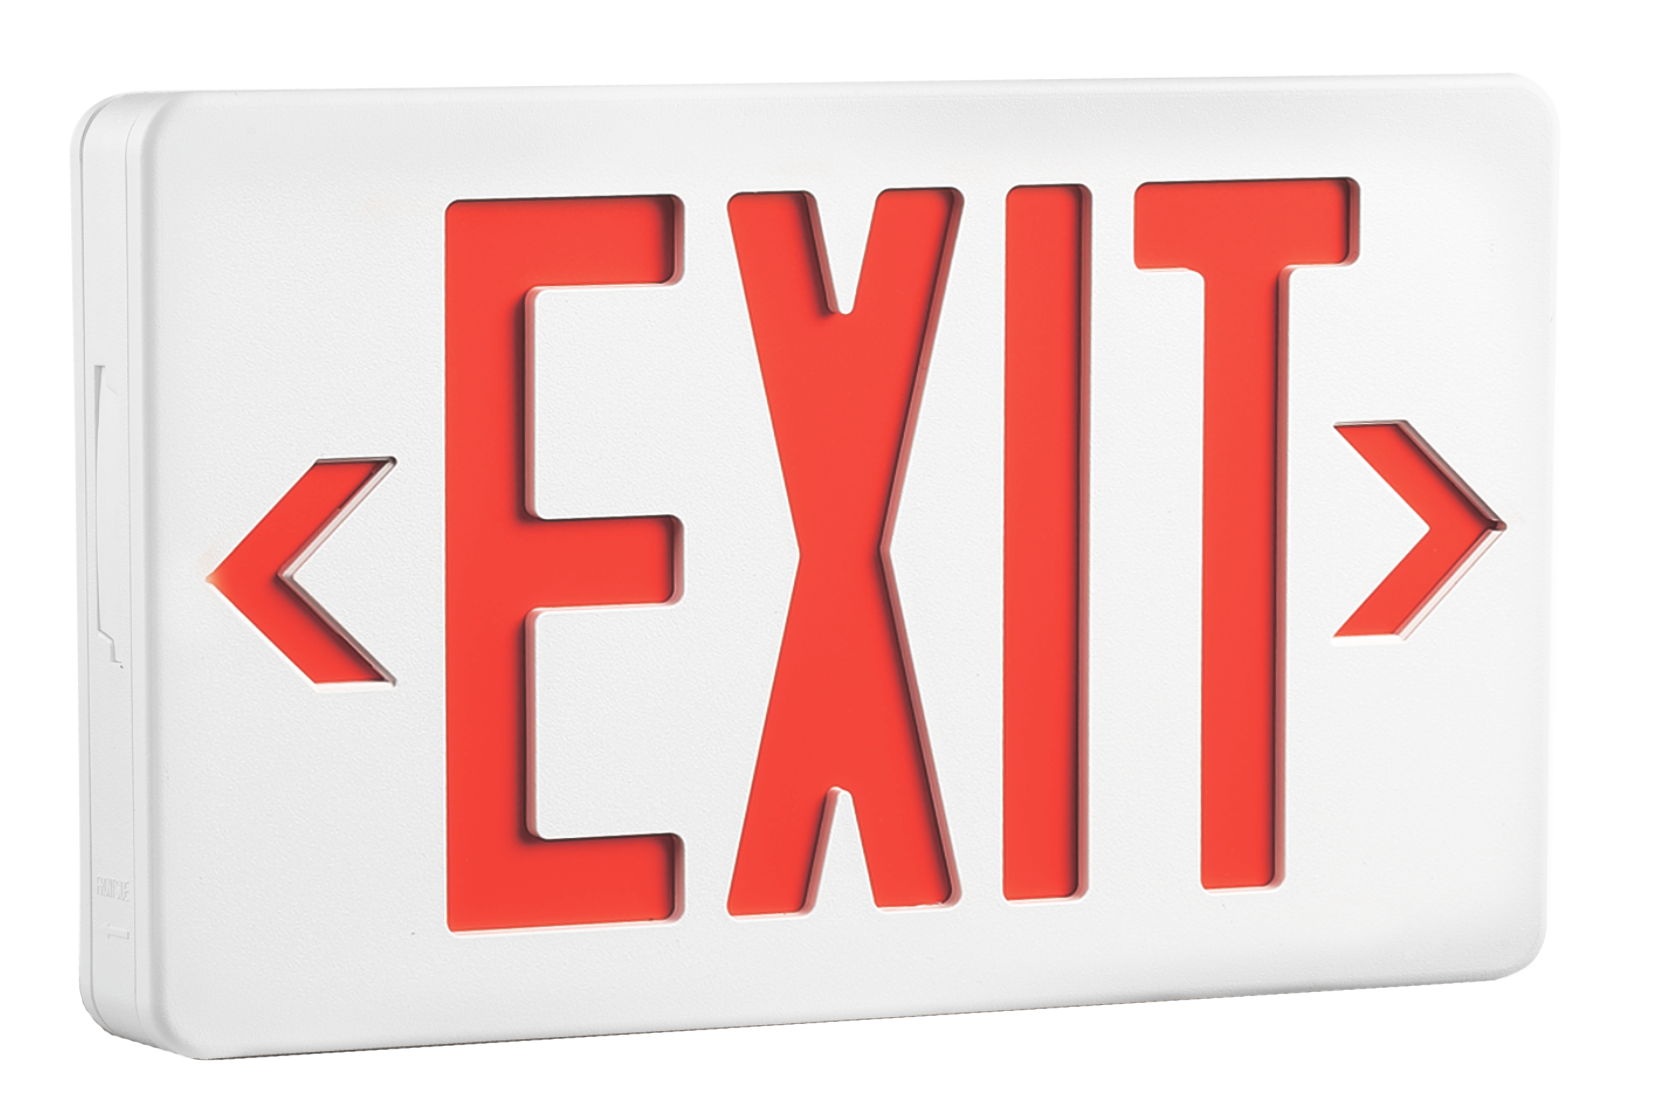 LED Exit Sign, EXRWE – 1.8W